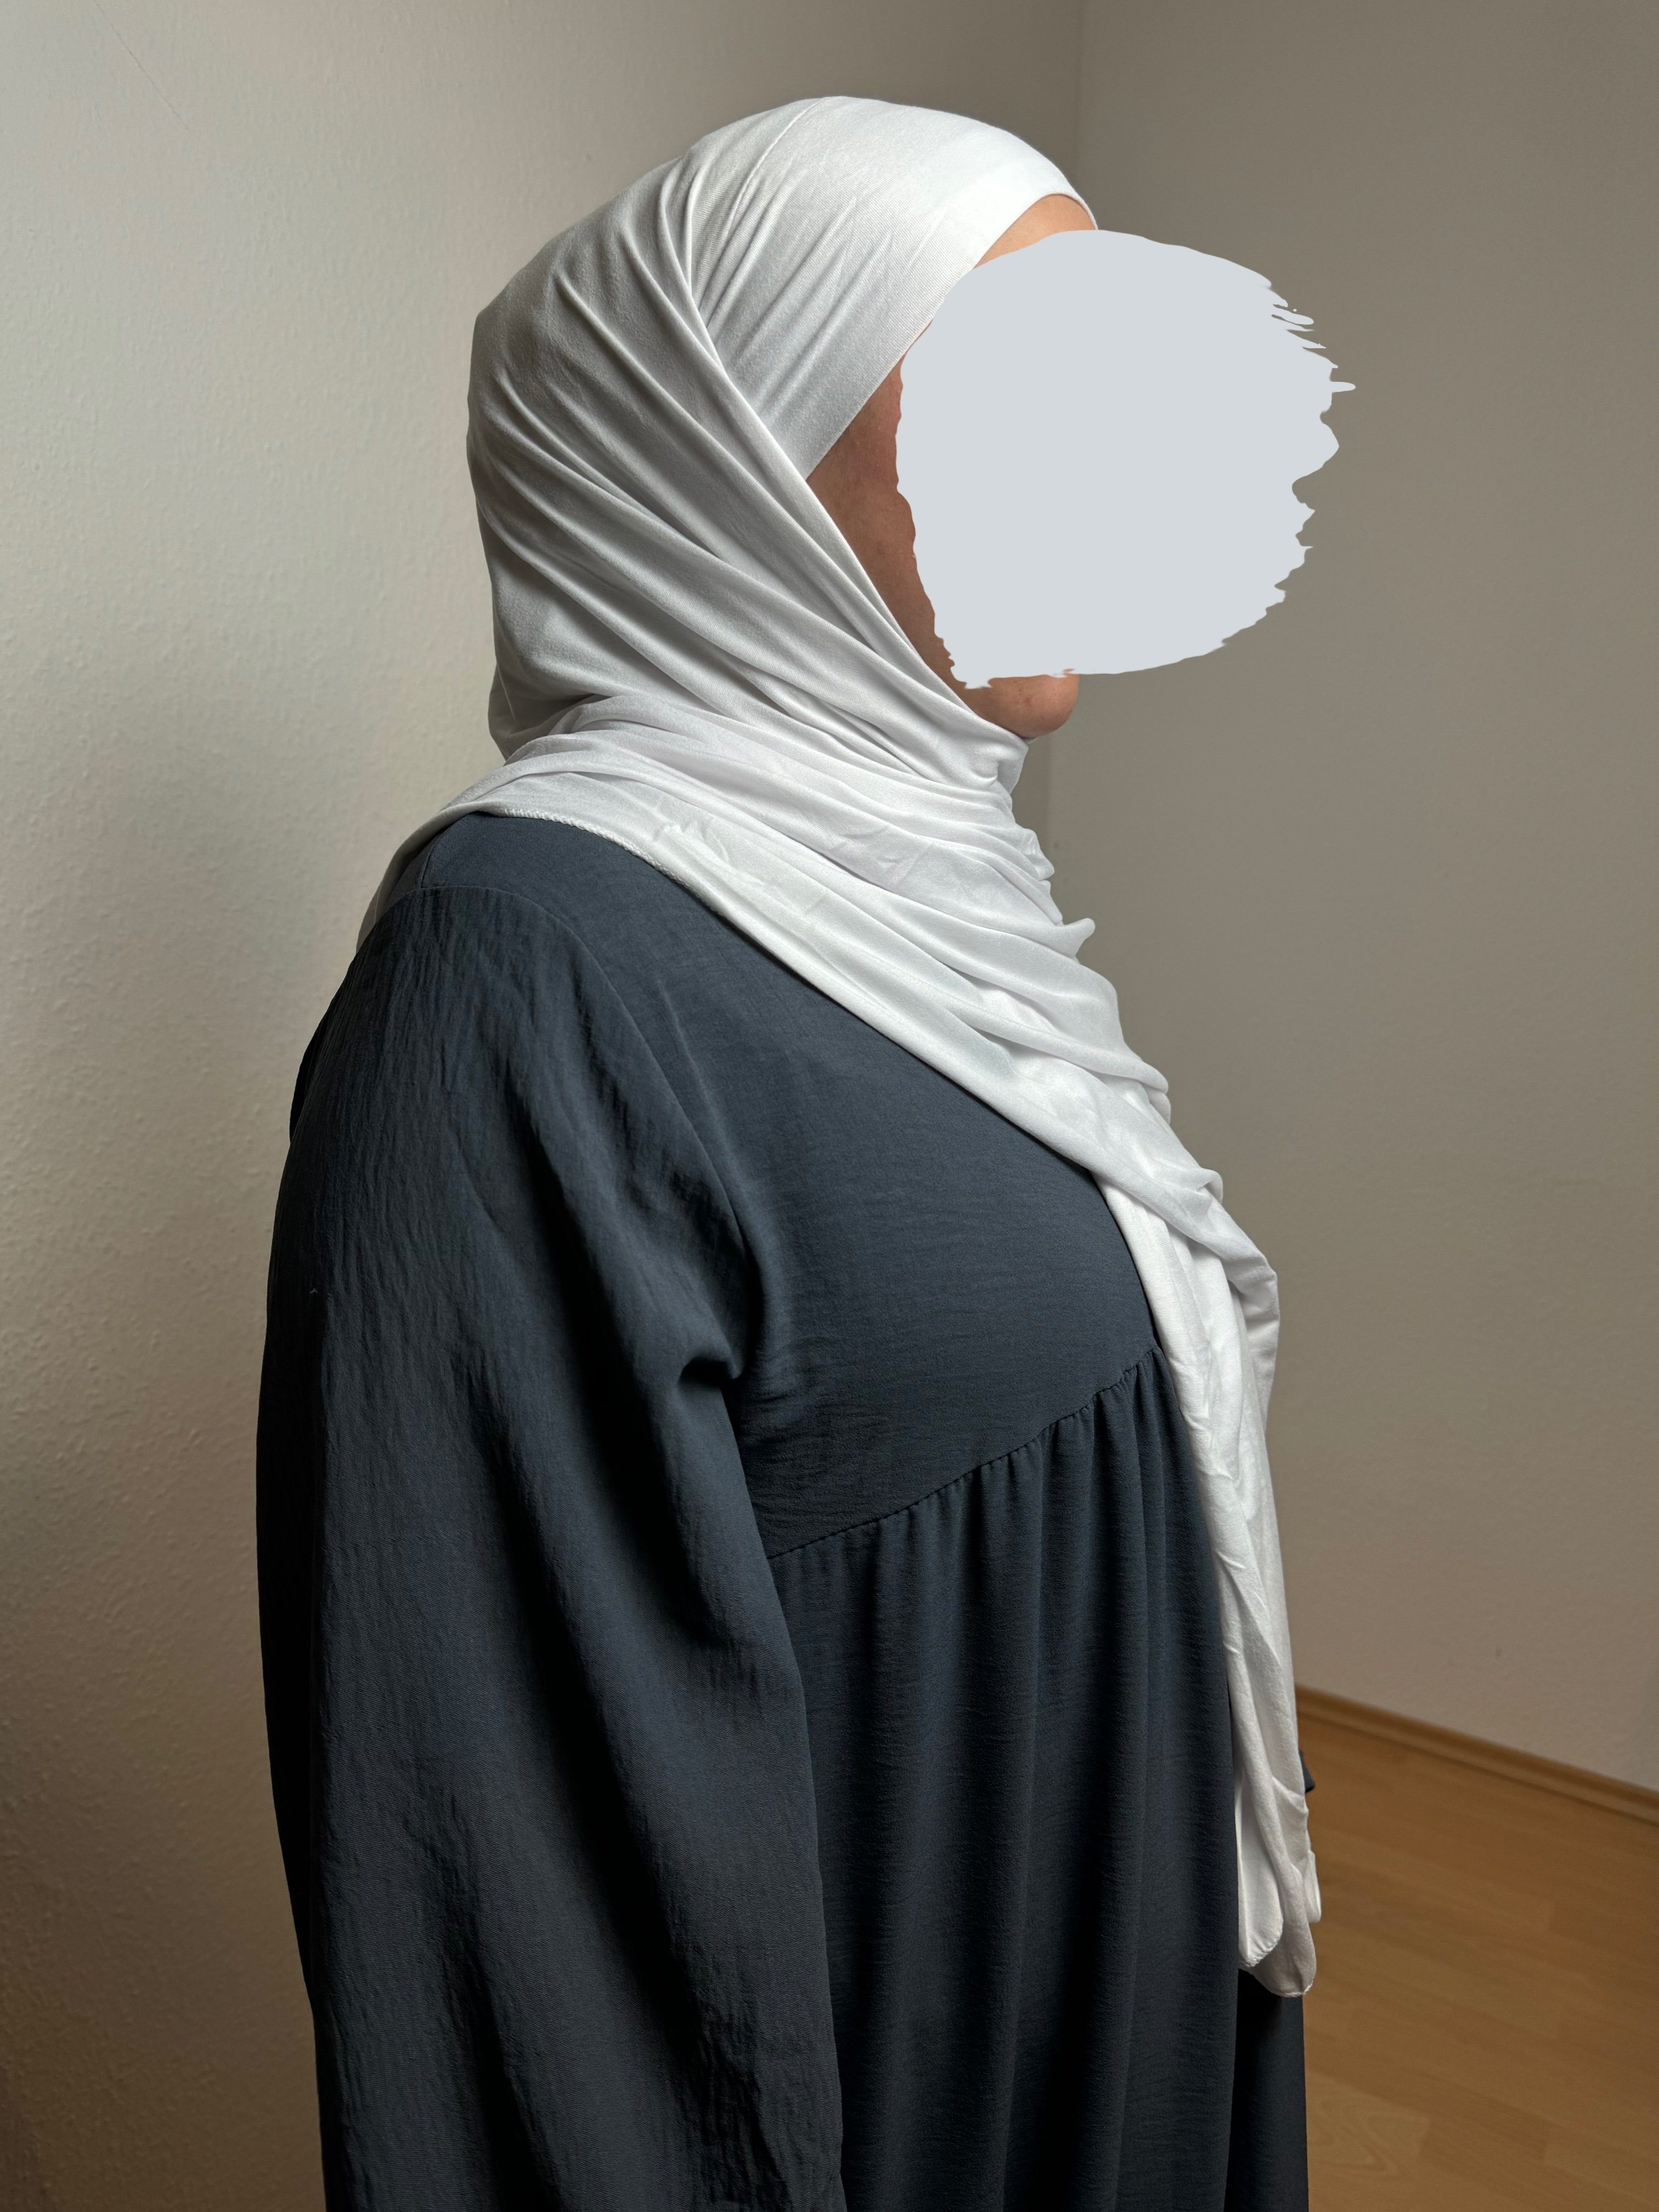 HIJABIFY Hijab Easy Hijab mit integrierter unter Tuch (antirutsch) Jersey-Stoff 2 in 1 Hijab/ Hidschab/ Kopftuch Weiss